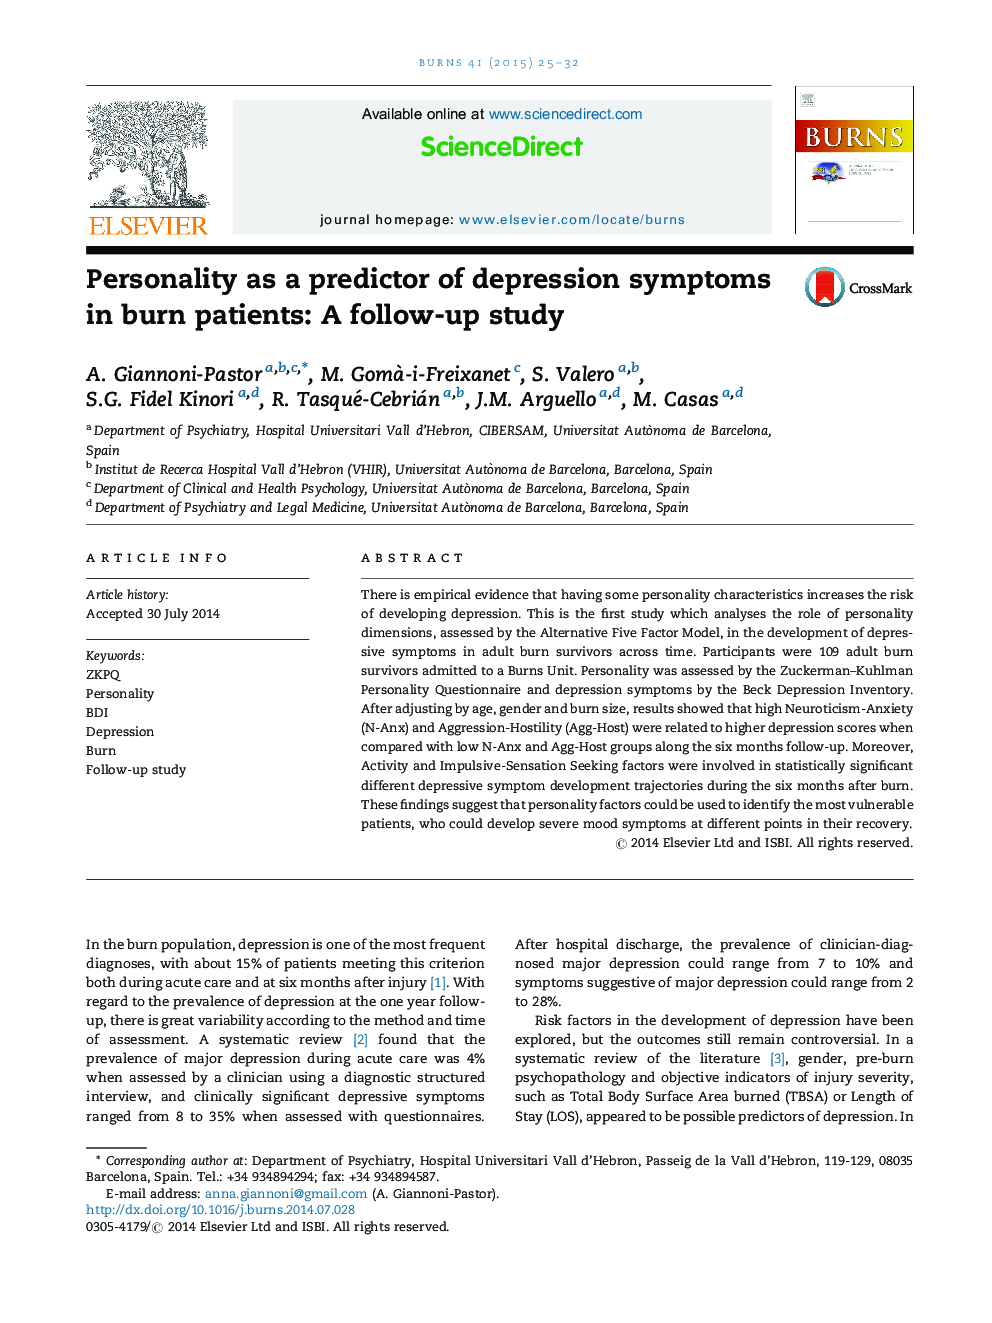 شخصیت به عنوان پیش بینی کننده علائم افسردگی در بیماران سوختگی: یک مطالعه پیگیری